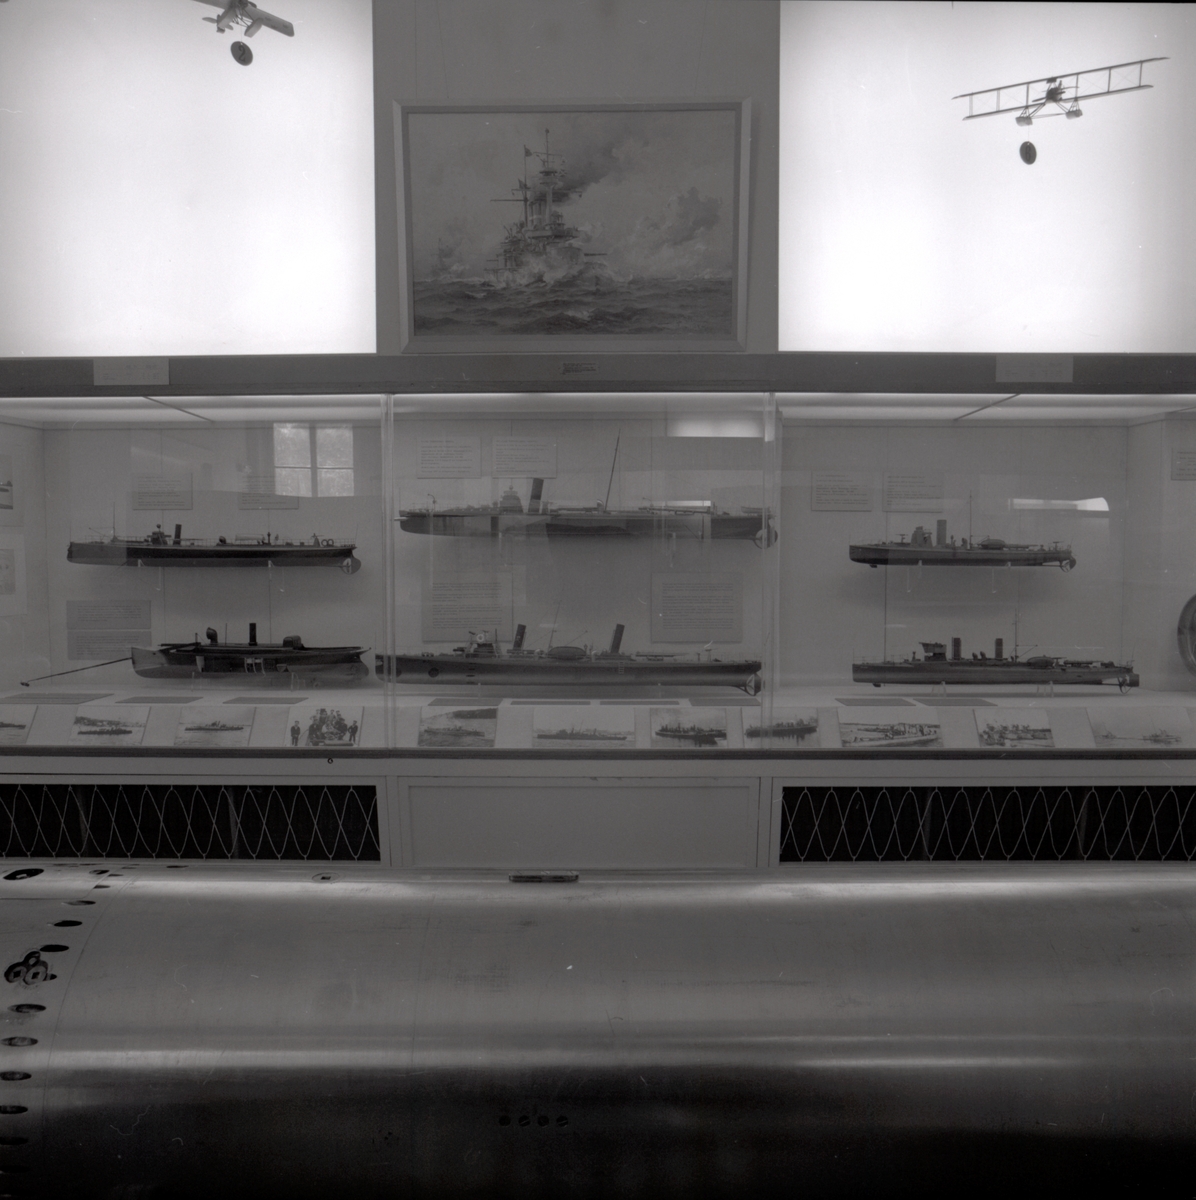 Marina utställningen innan ombyggnad till café. Del av utställningen med montrer längs väggen visande modeller av fartyg och flygplan.